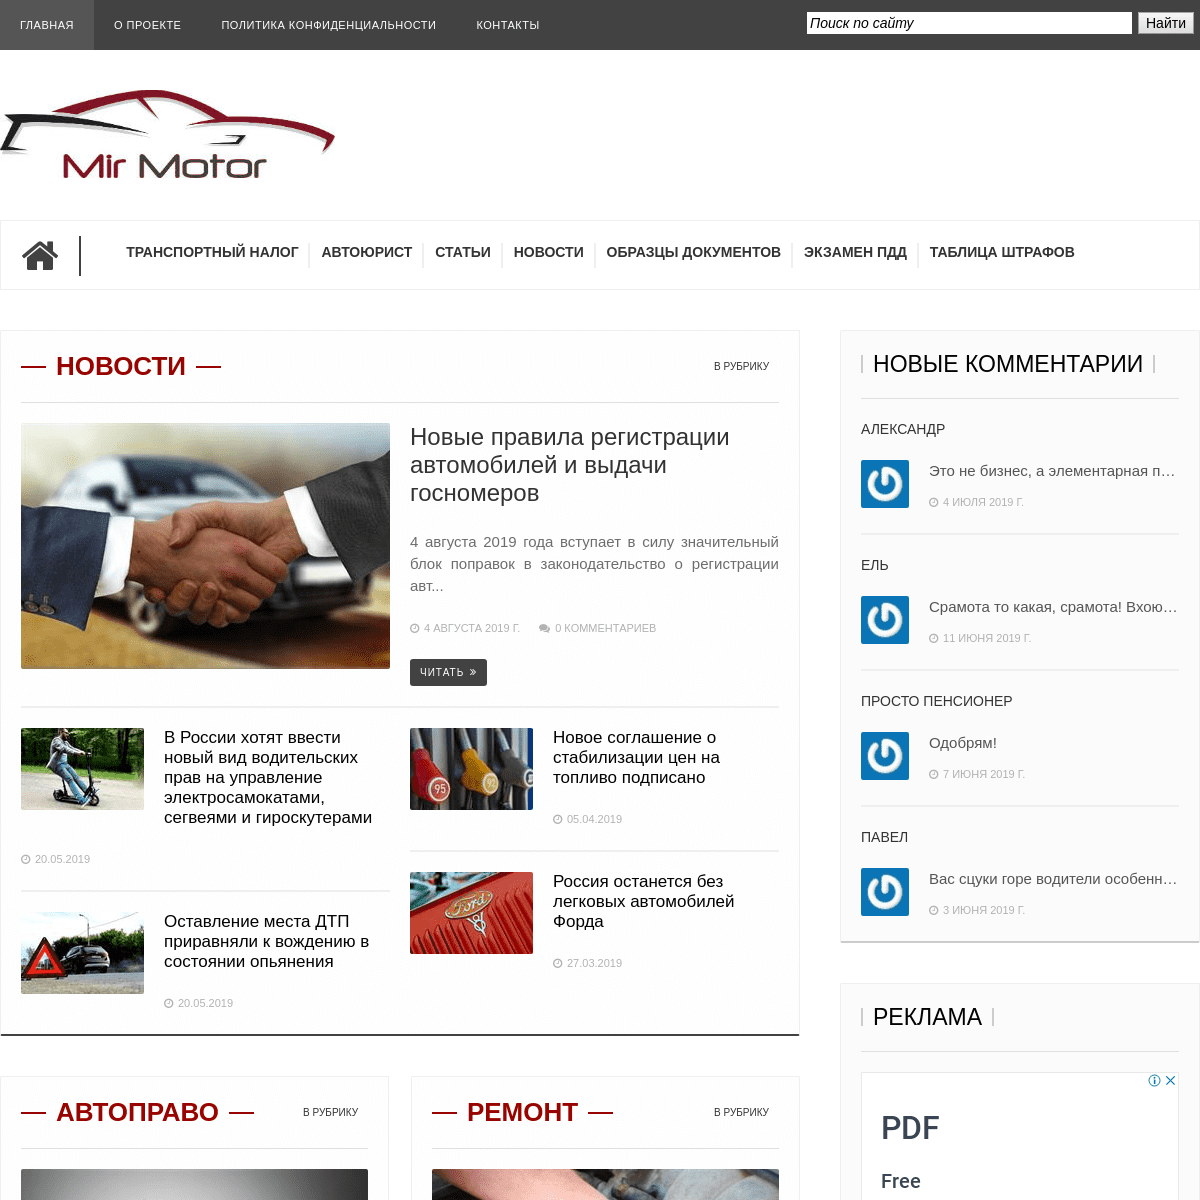 MirMotor.ru - онлайн журнал для автолюбителей, правовая помощь водителям